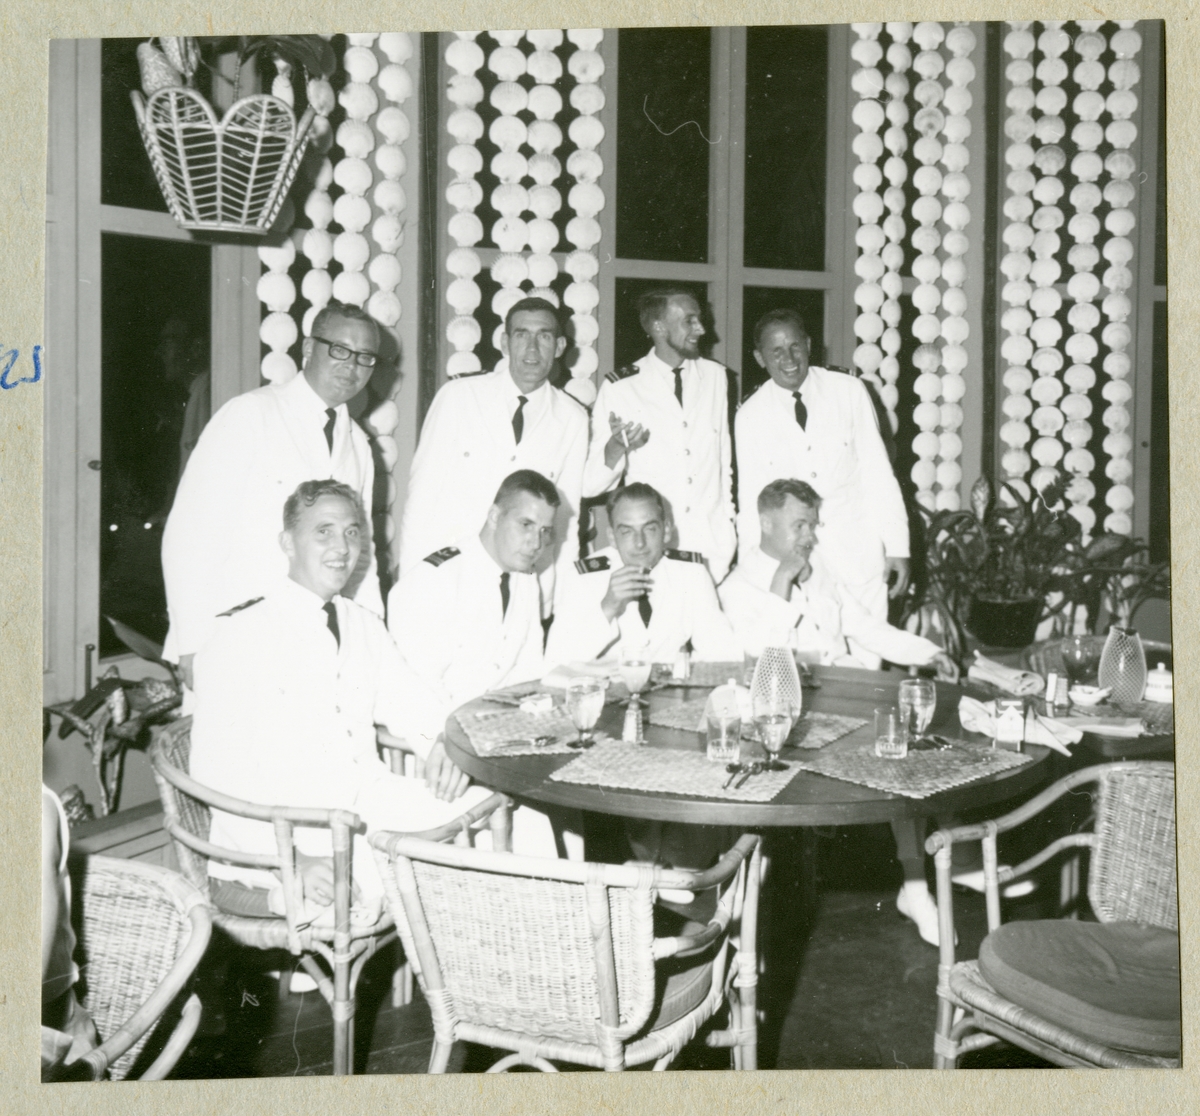 Bilden föreställer besättningsmän i vita uniformer som poserar för en gruppbild i samband med ett restaurantbesök. Bilden är tagen under minfartyget Älvsnabbens långresa 1966-1967.